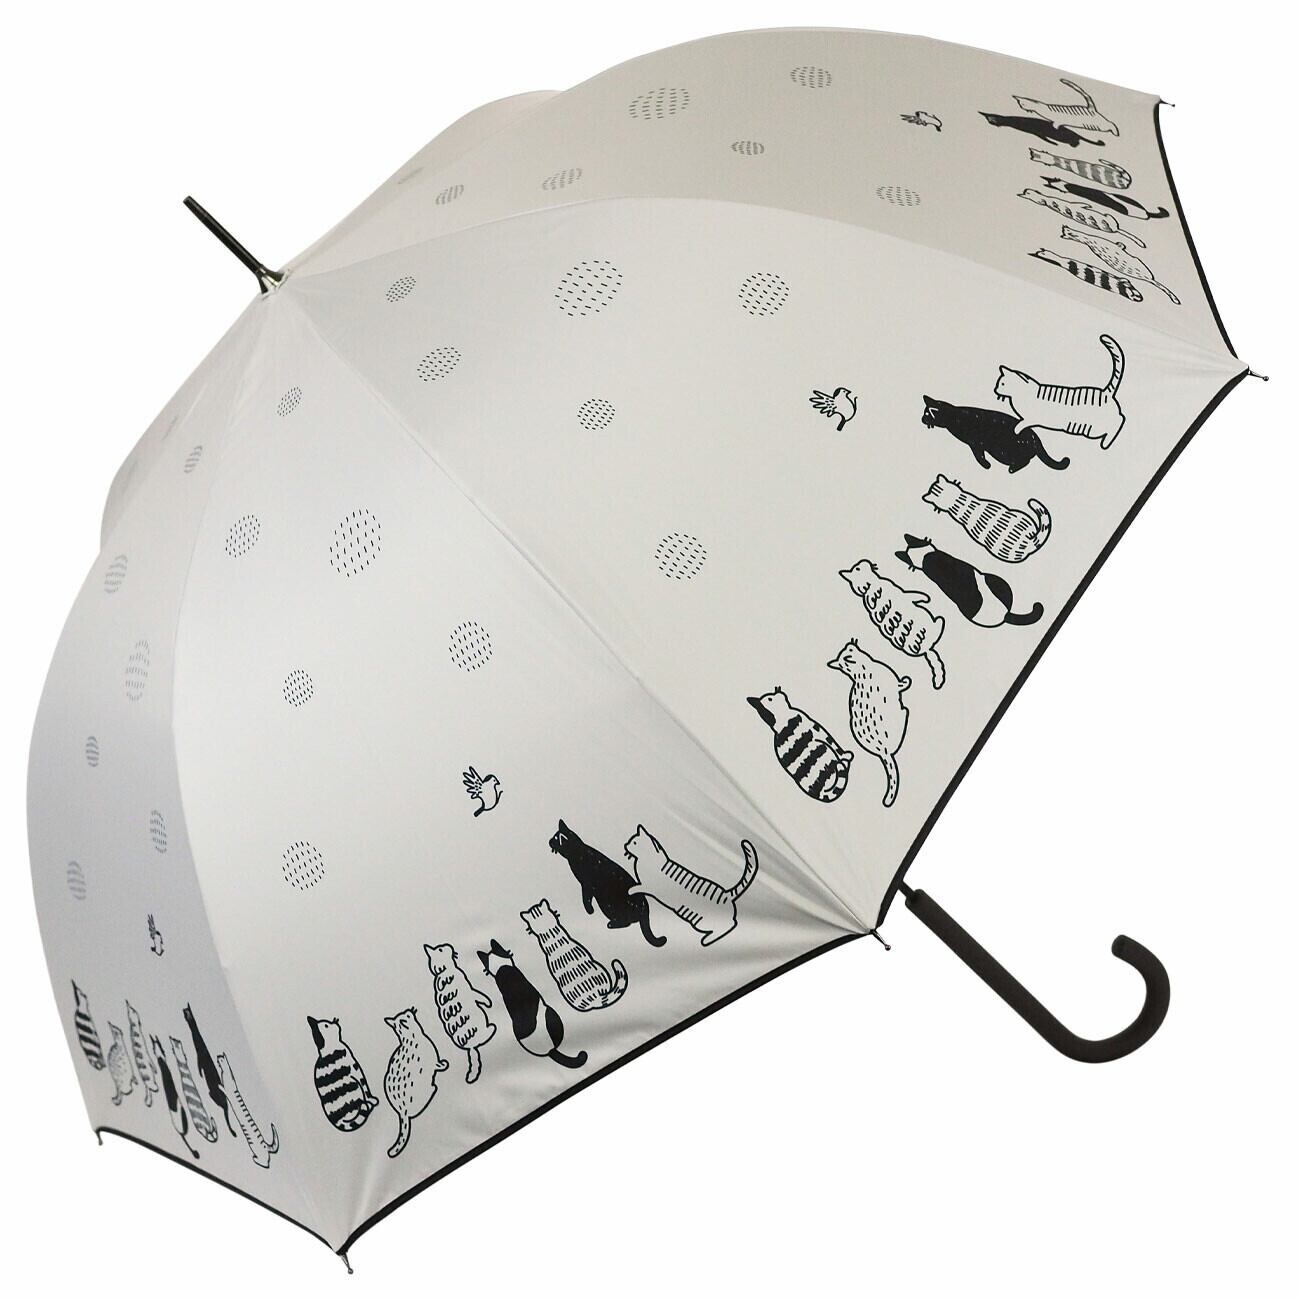 傘｜猫柄｜猫雑貨 猫モチーフ ジャンプ傘 猫柄 猫グッズ かさ かわいい傘 日傘 晴雨兼用 プレゼント 贈り物